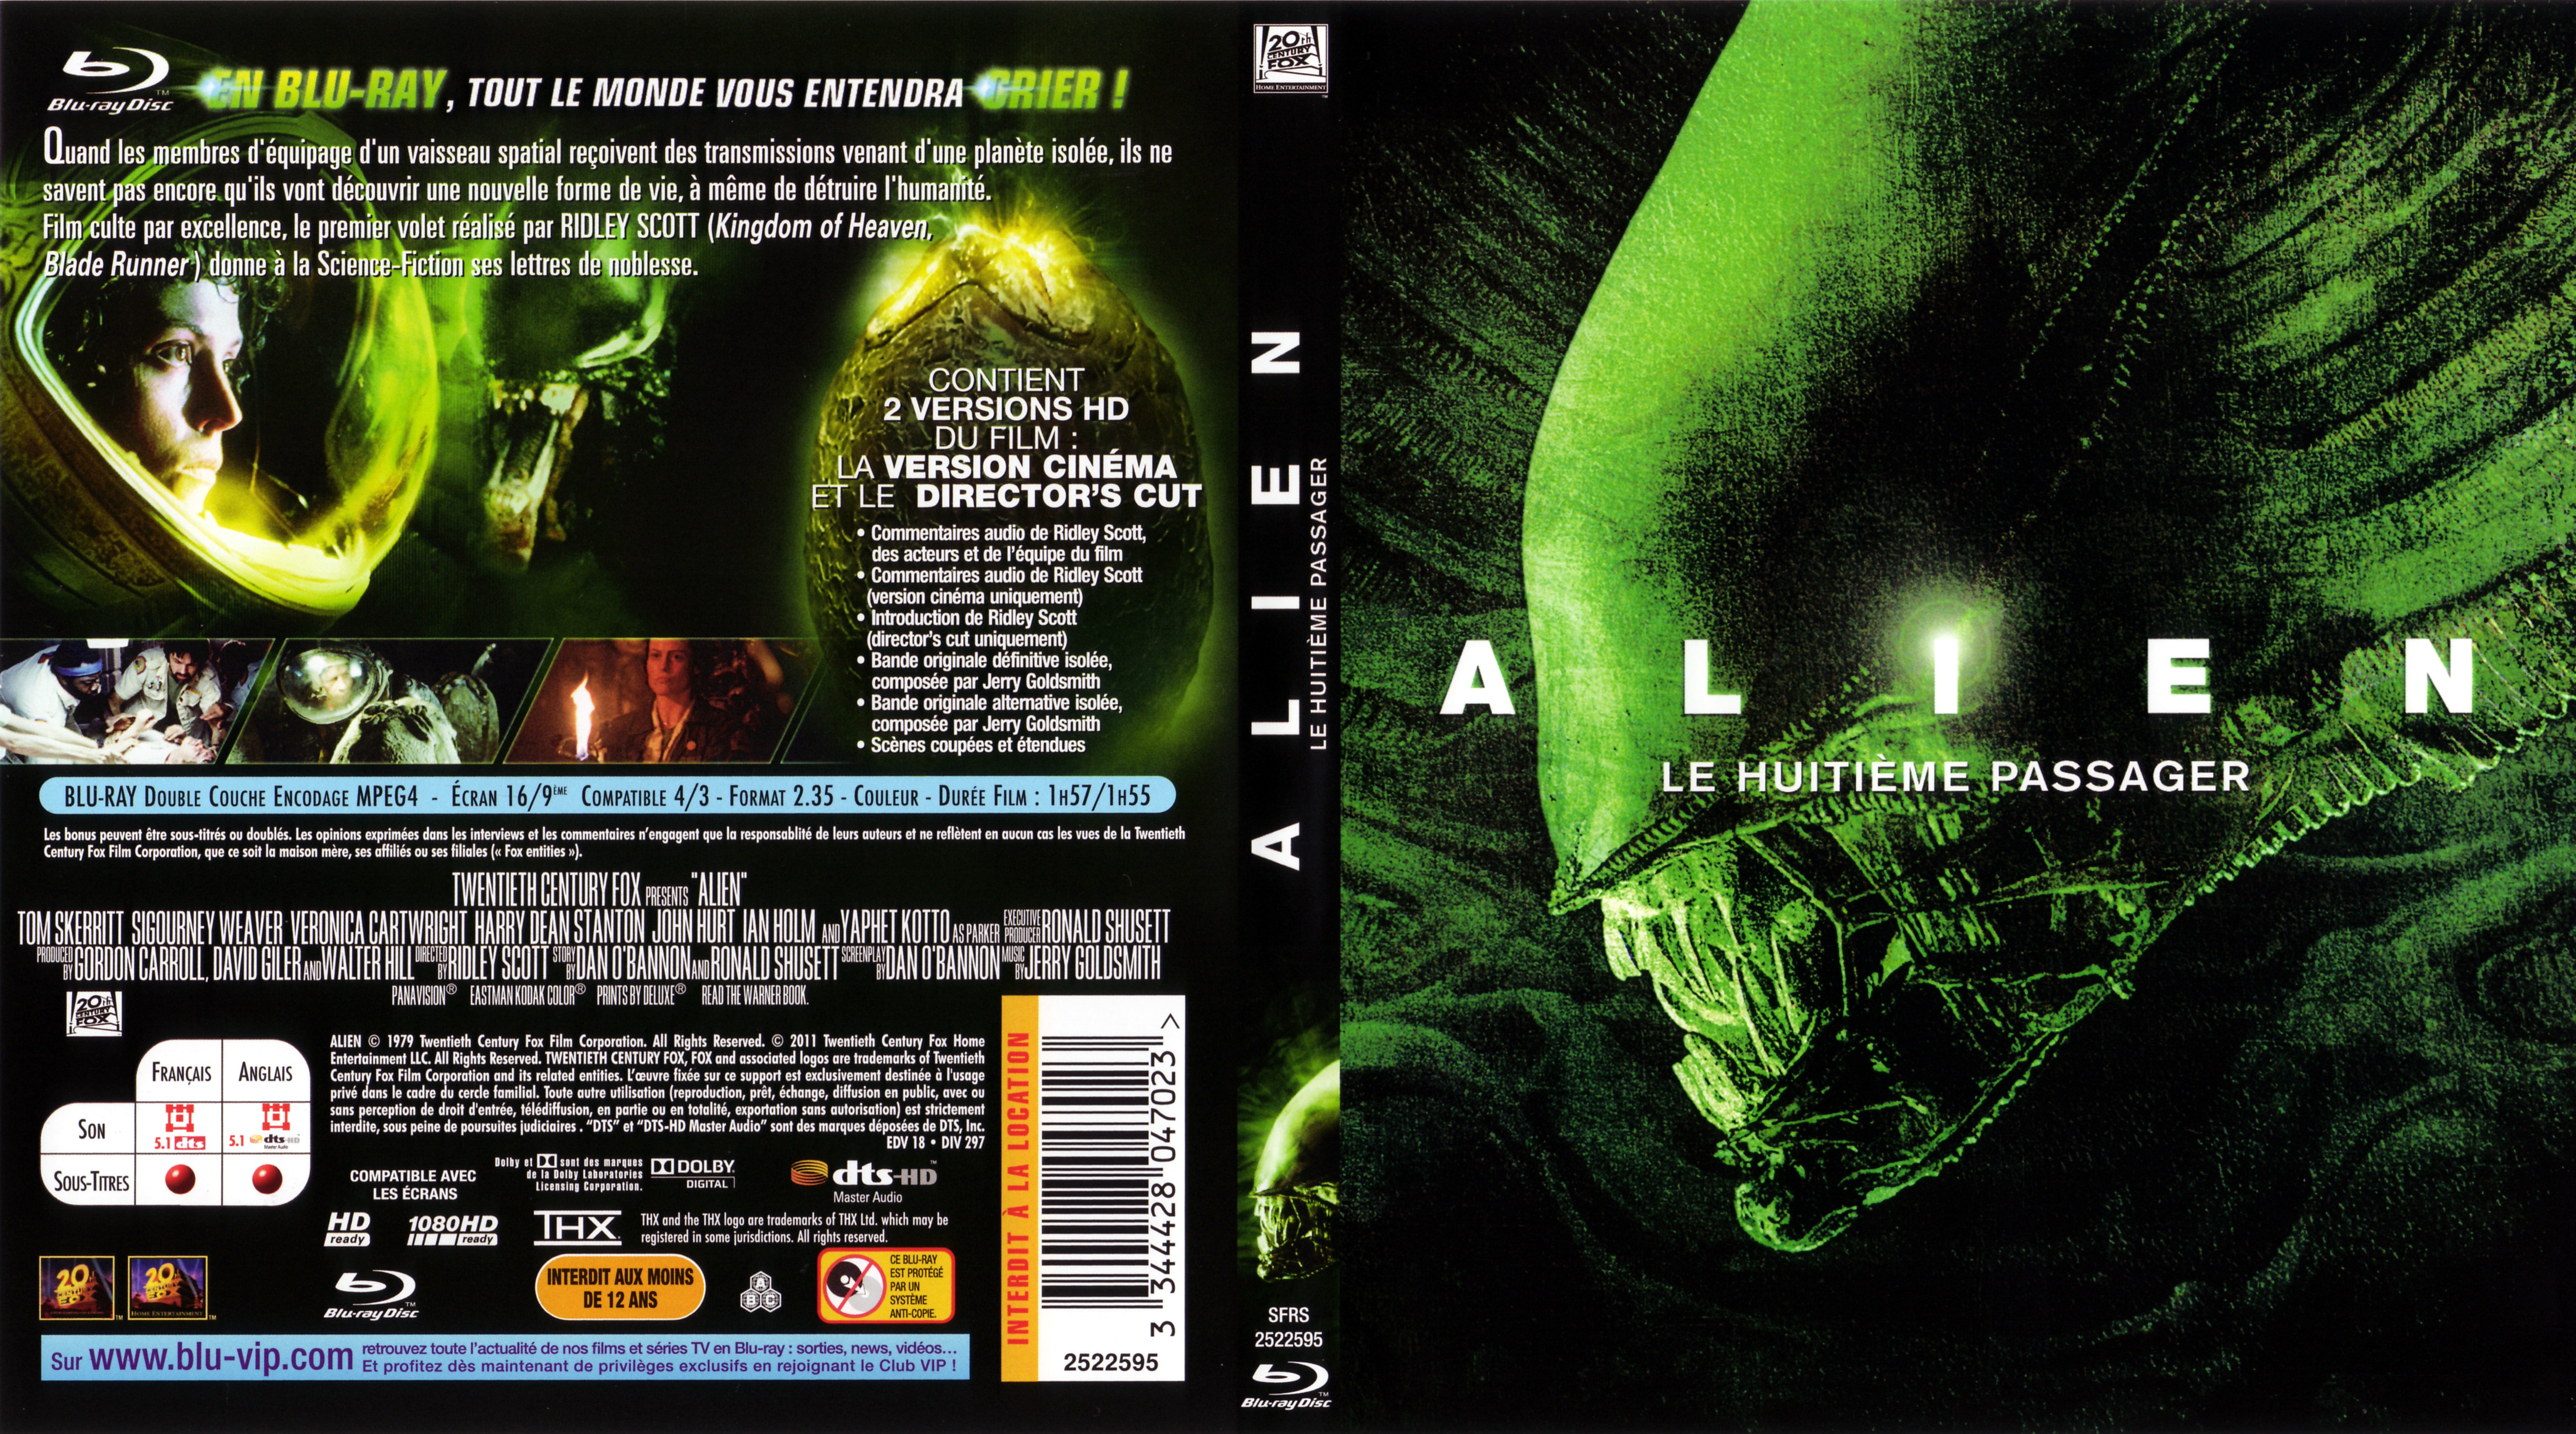 Jaquette DVD Alien le huitime passager (BLU-RAY)